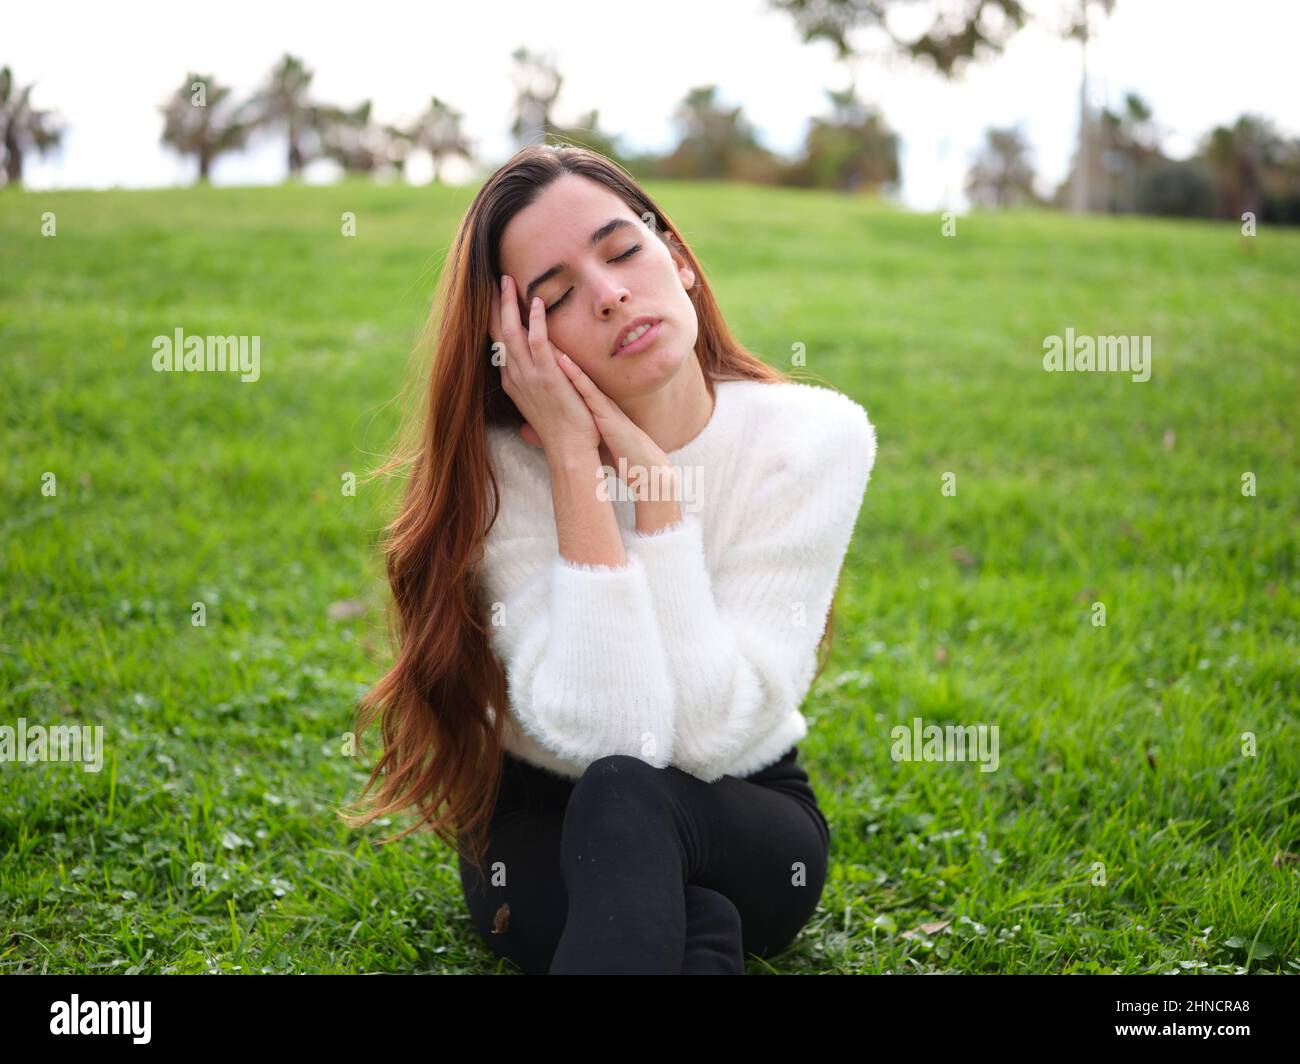 Eine junge Frau im Park sitzt auf dem Gras mit ihren Händen auf ihrem Gesicht und ihre Augen geschlossen Tagträumen. Stockfoto